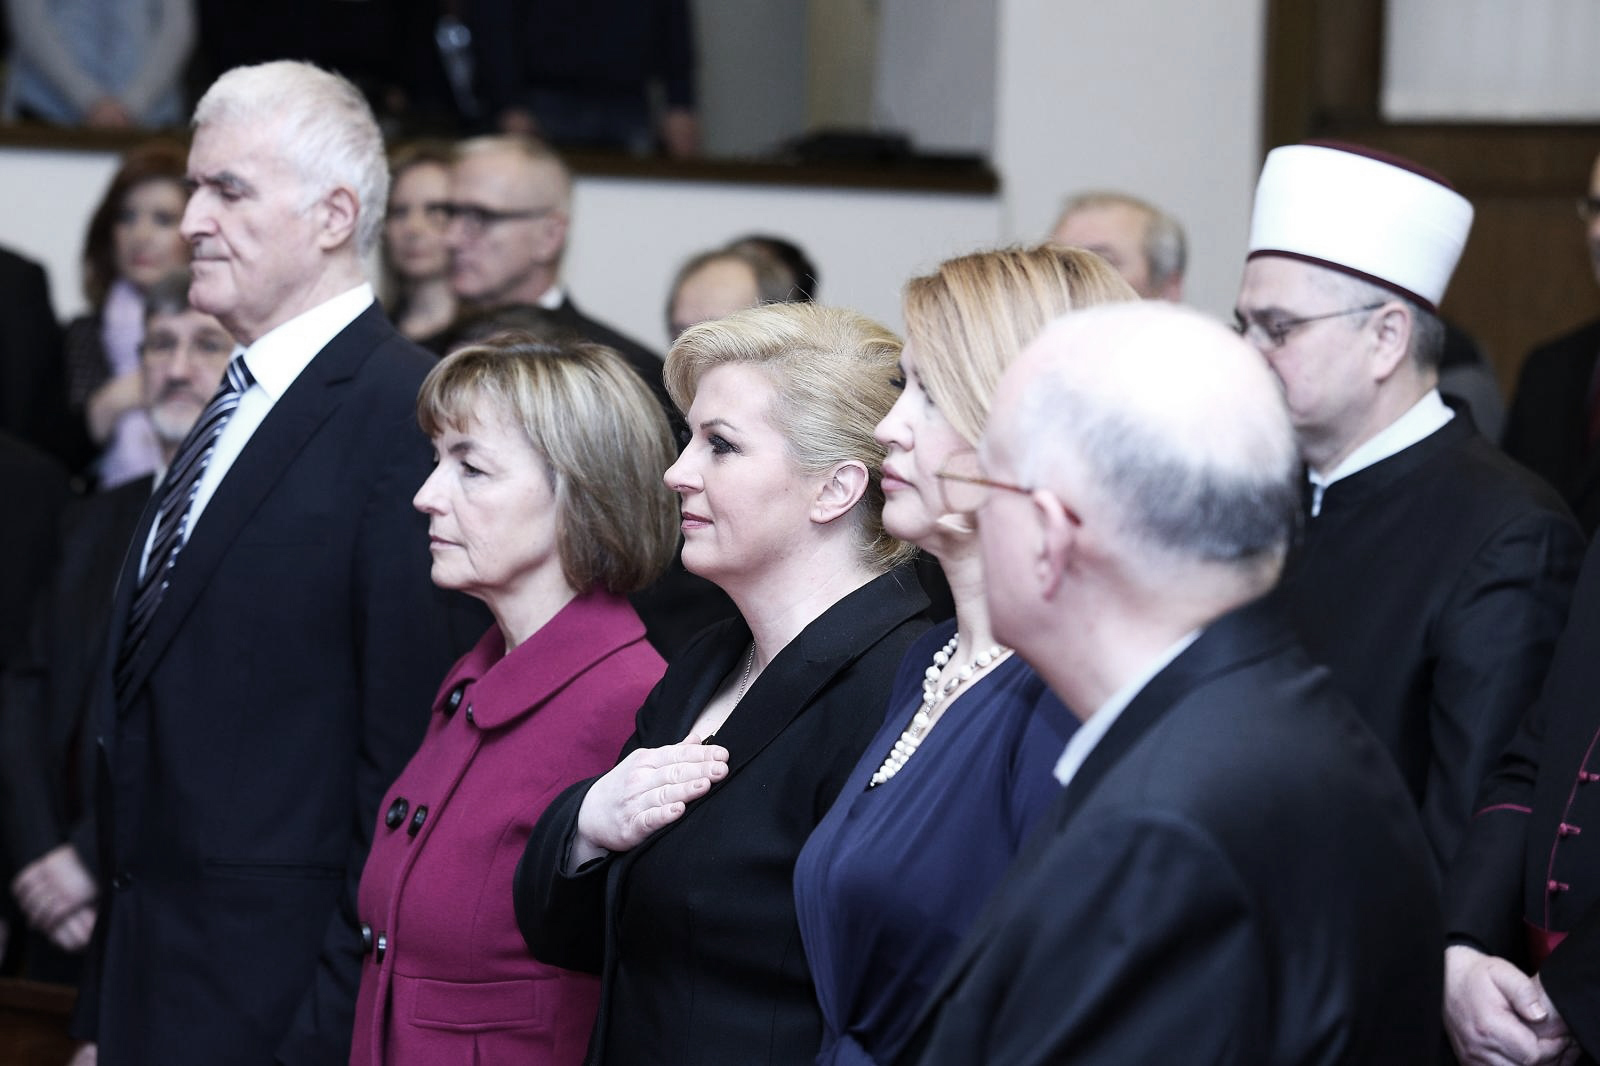 27.01.2015., Zagreb - U Saboru je obiljezen Medjunarodni dan sjecanja na zrtve holokausta. Photo: Patrik Macek/PIXSELL